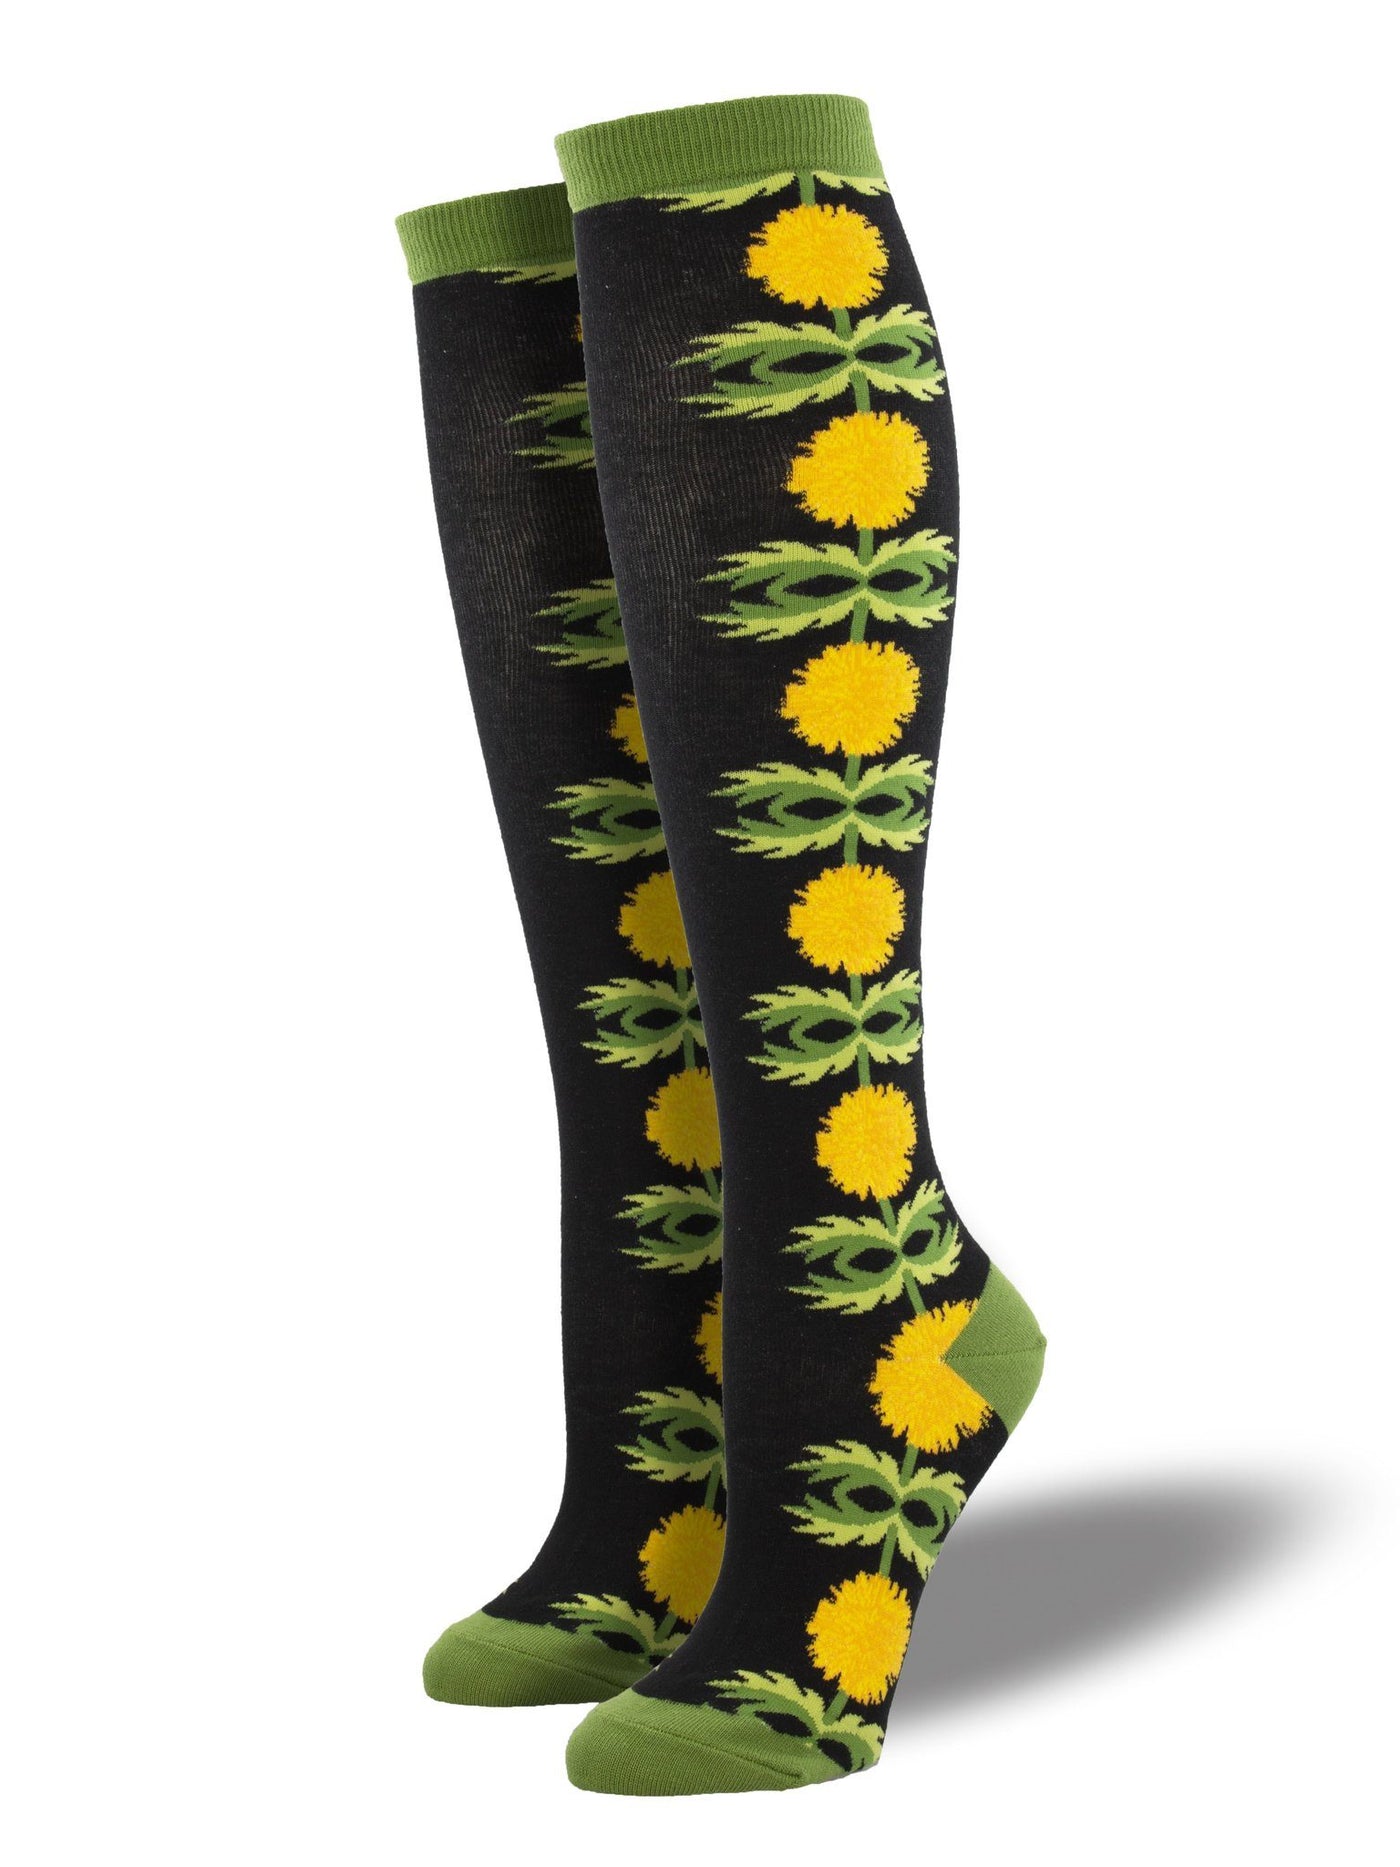 Socksmith - "Just Dandy" Dandelion Knee High Socks | Women's - Knock Your Socks Off